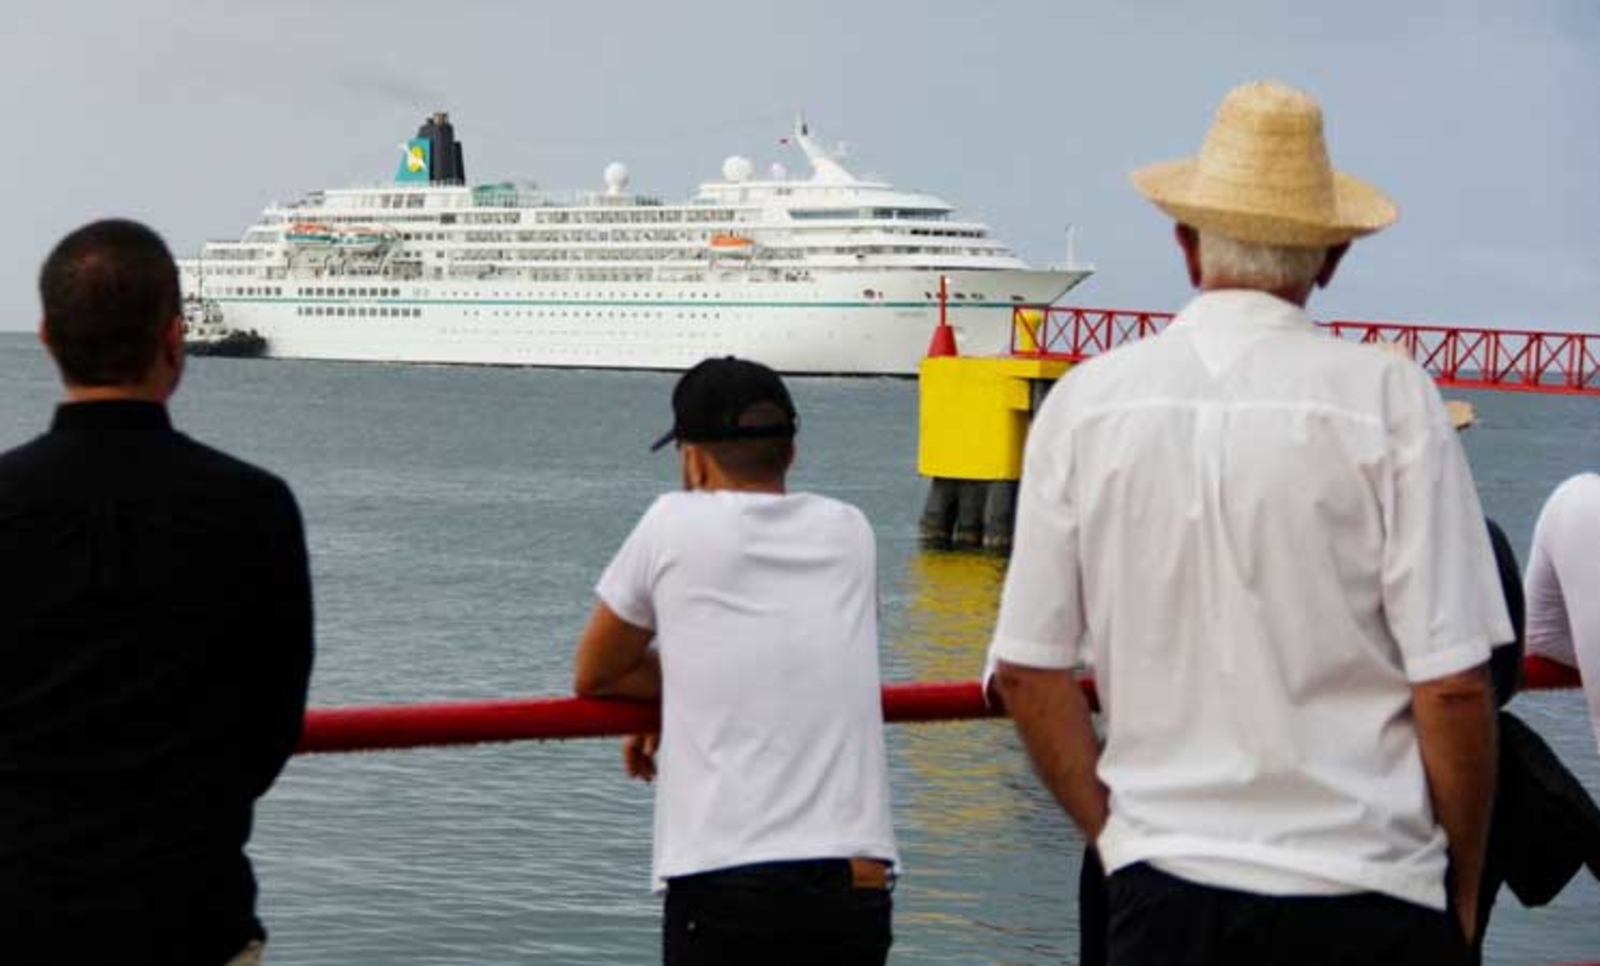 لأول مرة منذ 15 سنة.. فنزويلا تستقبل سفينة سياحية بـ500 راكب قادمة من أوروبا